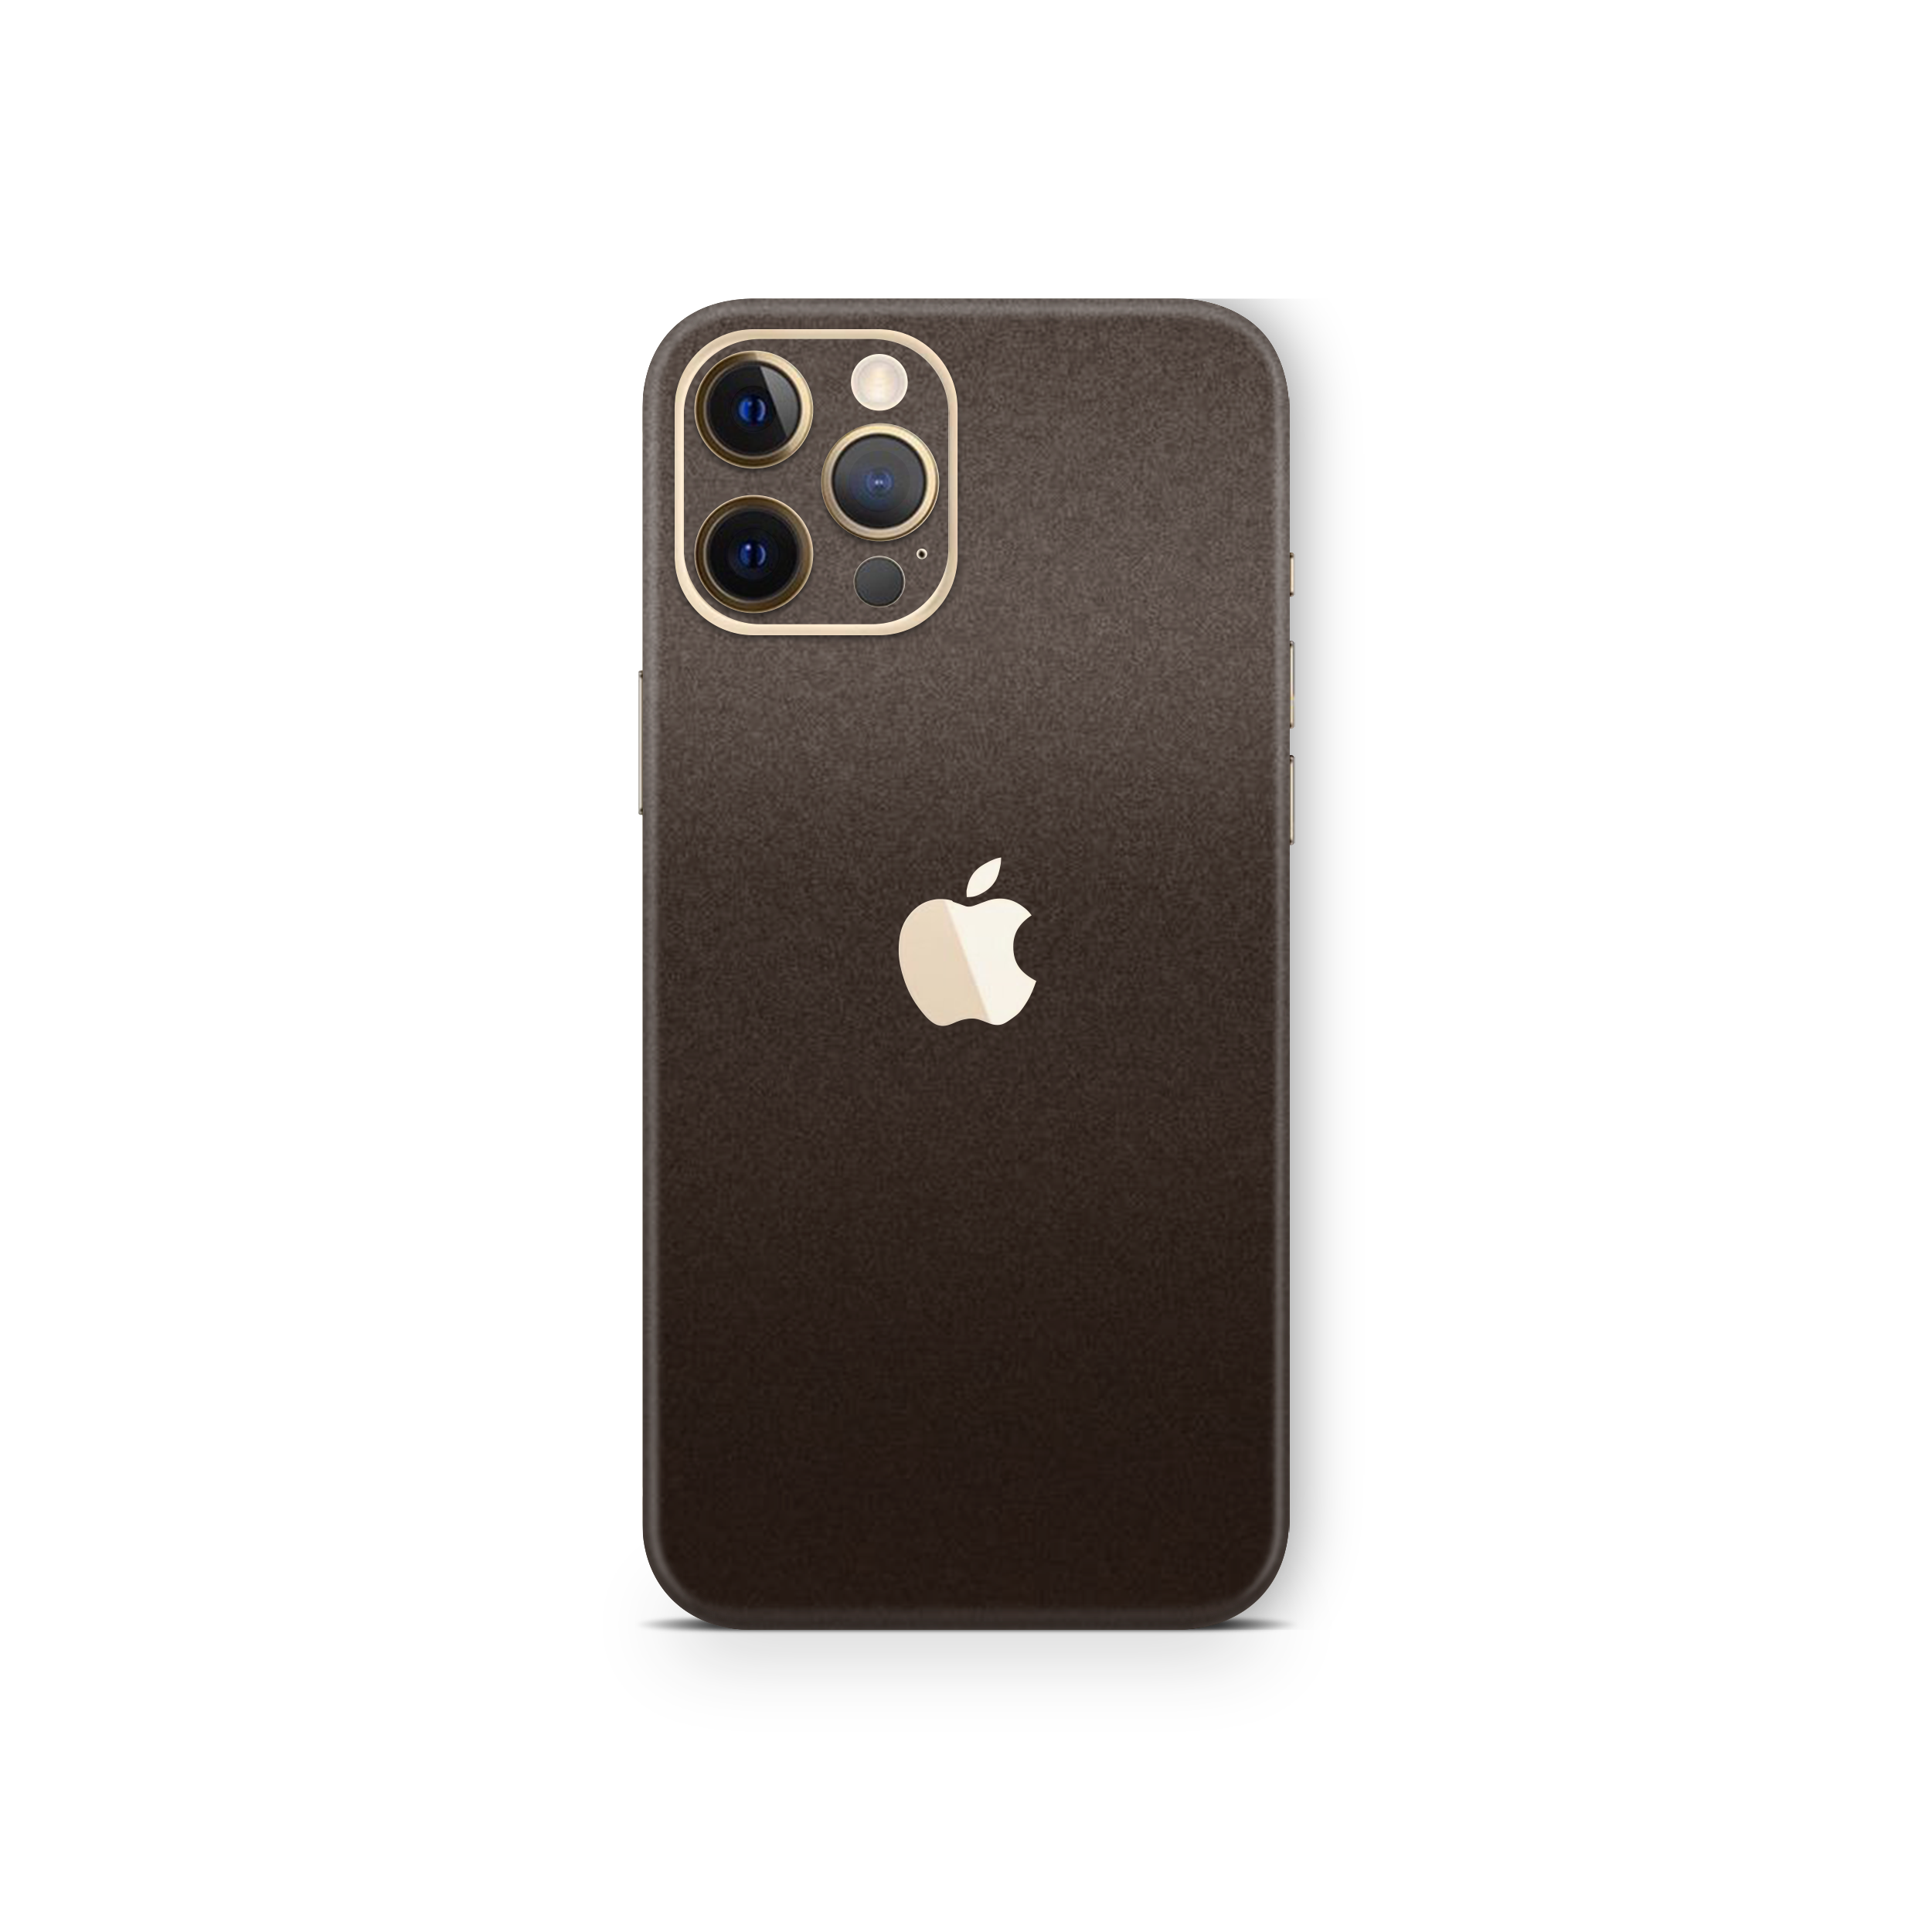 Matte Brown Metallic Skin For iPhone 12 Pro